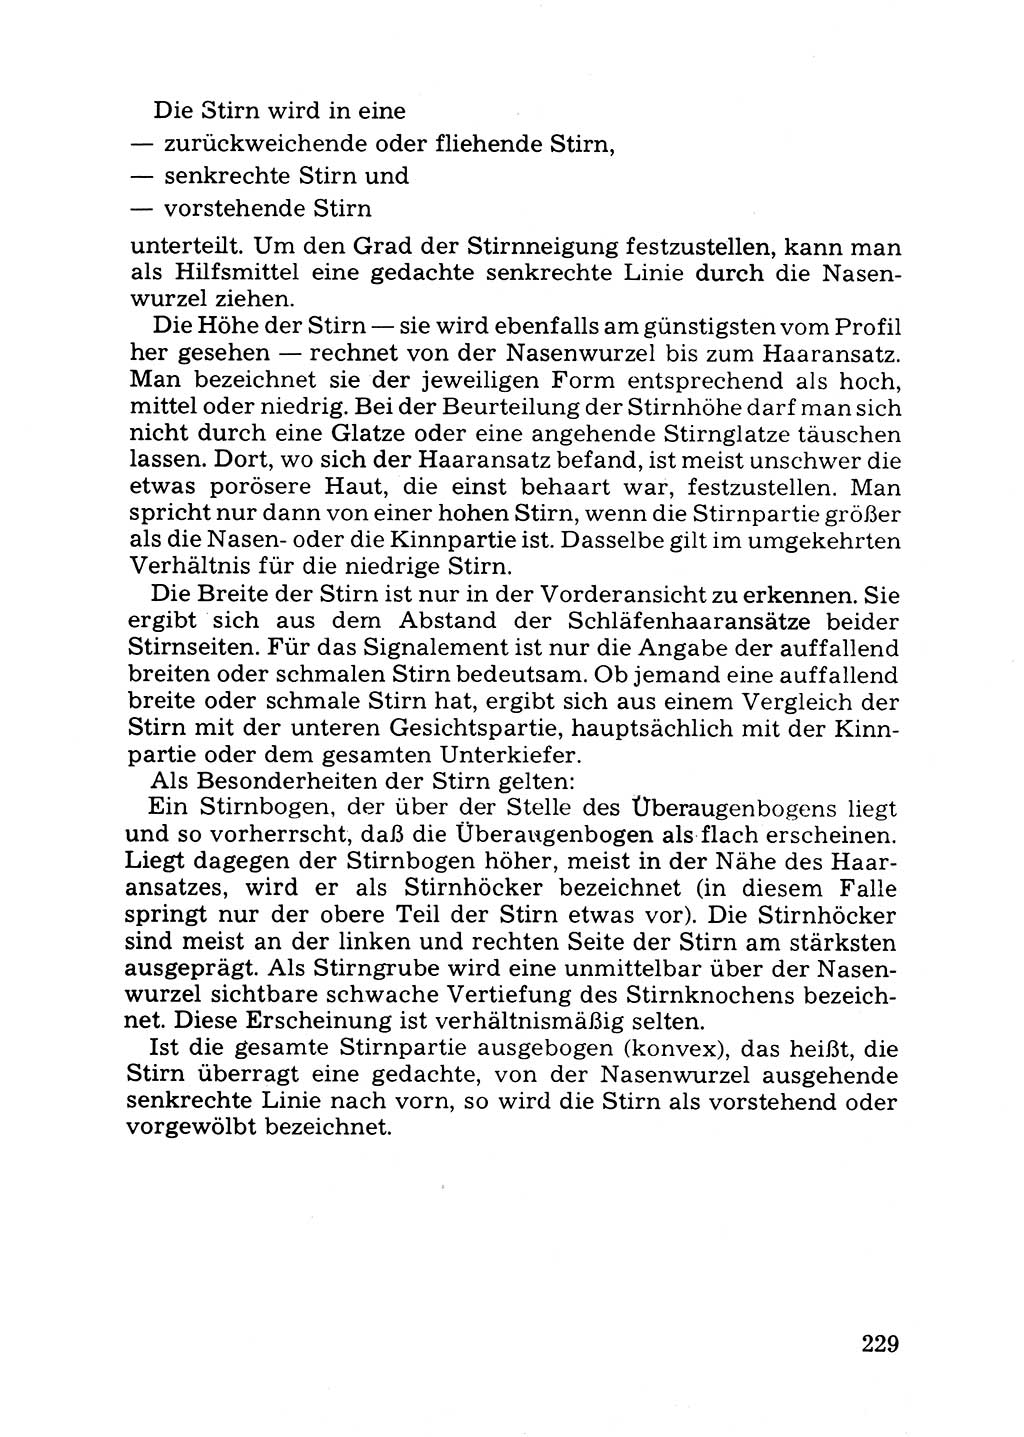 Das subjektive Porträt [Deutsche Demokratische Republik (DDR)] 1981, Seite 229 (Subj. Port. DDR 1981, S. 229)